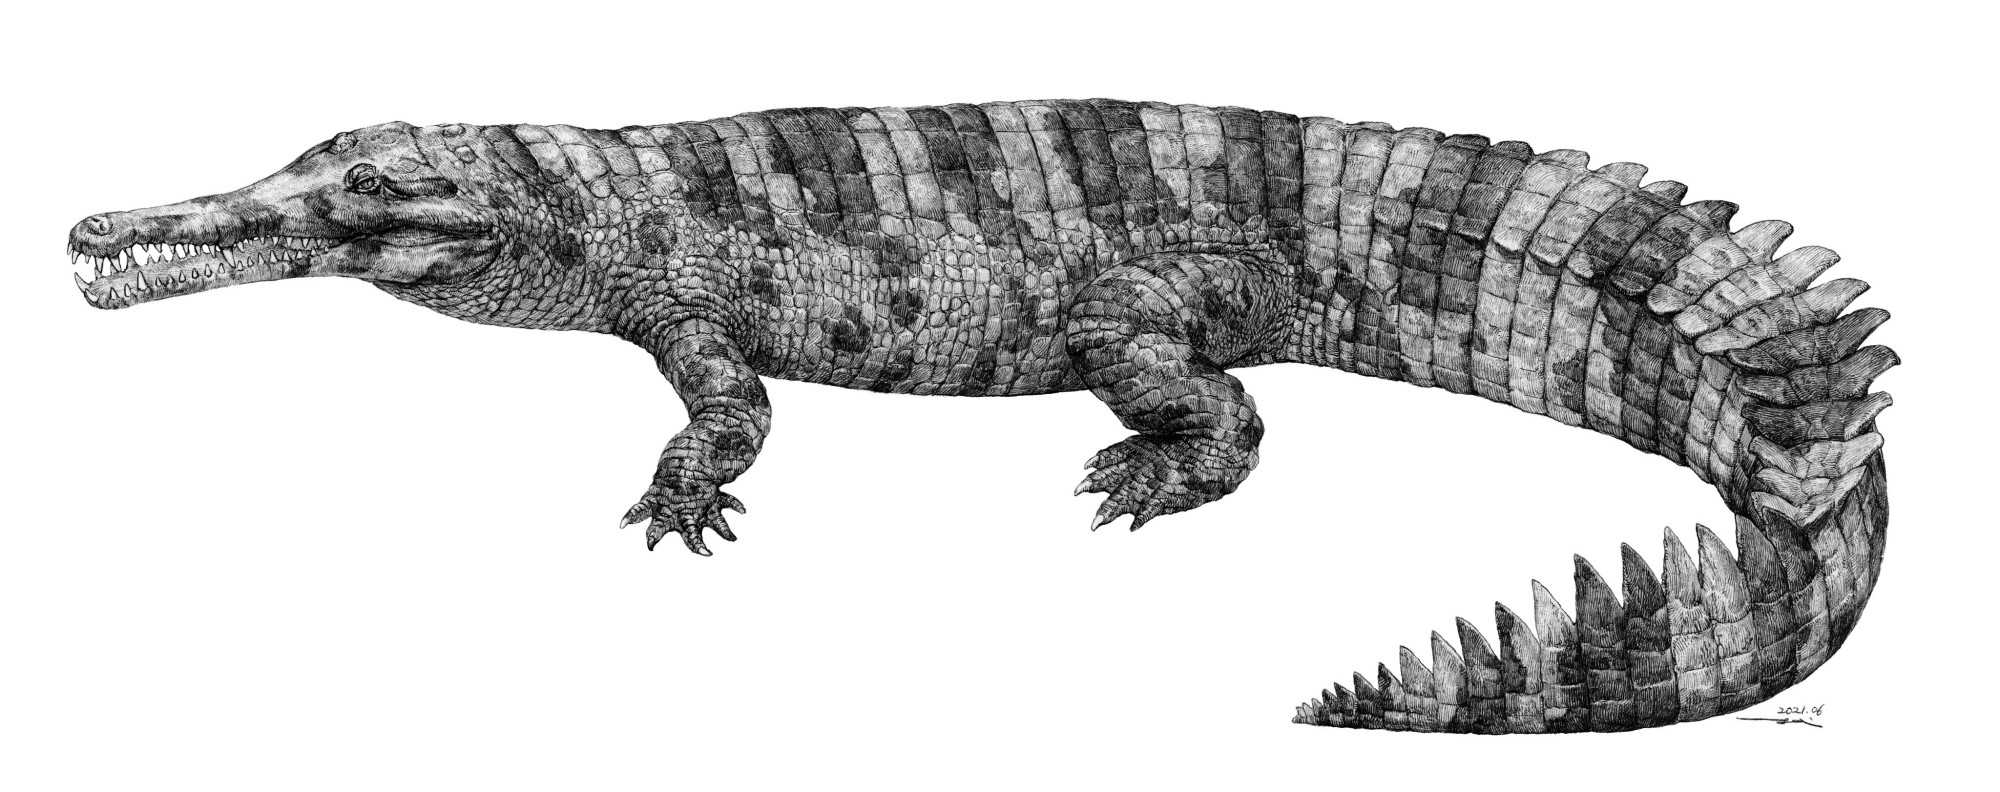 Гавиал из бронзового века Китая позволил разобраться в родственных связях крокодилов